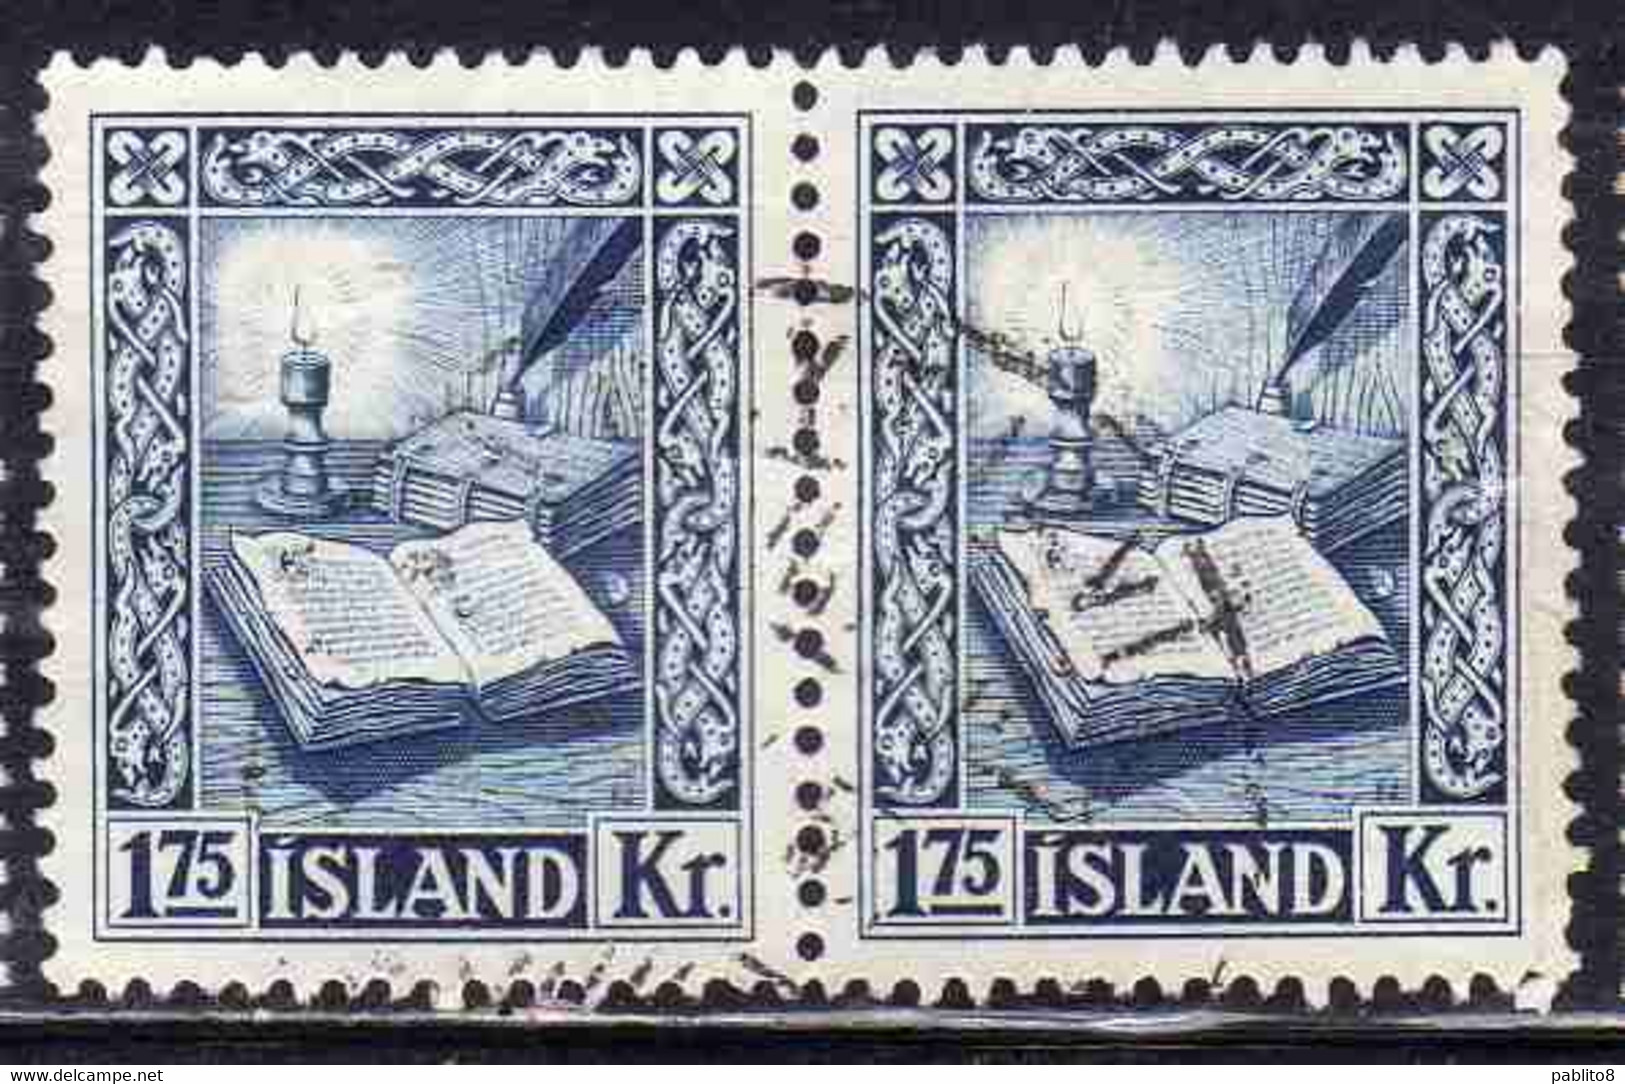 ISLANDA ICELAND ISLANDE 1953 REJKJABOK 1.75k USED USATO OBLITERE' - Gebruikt